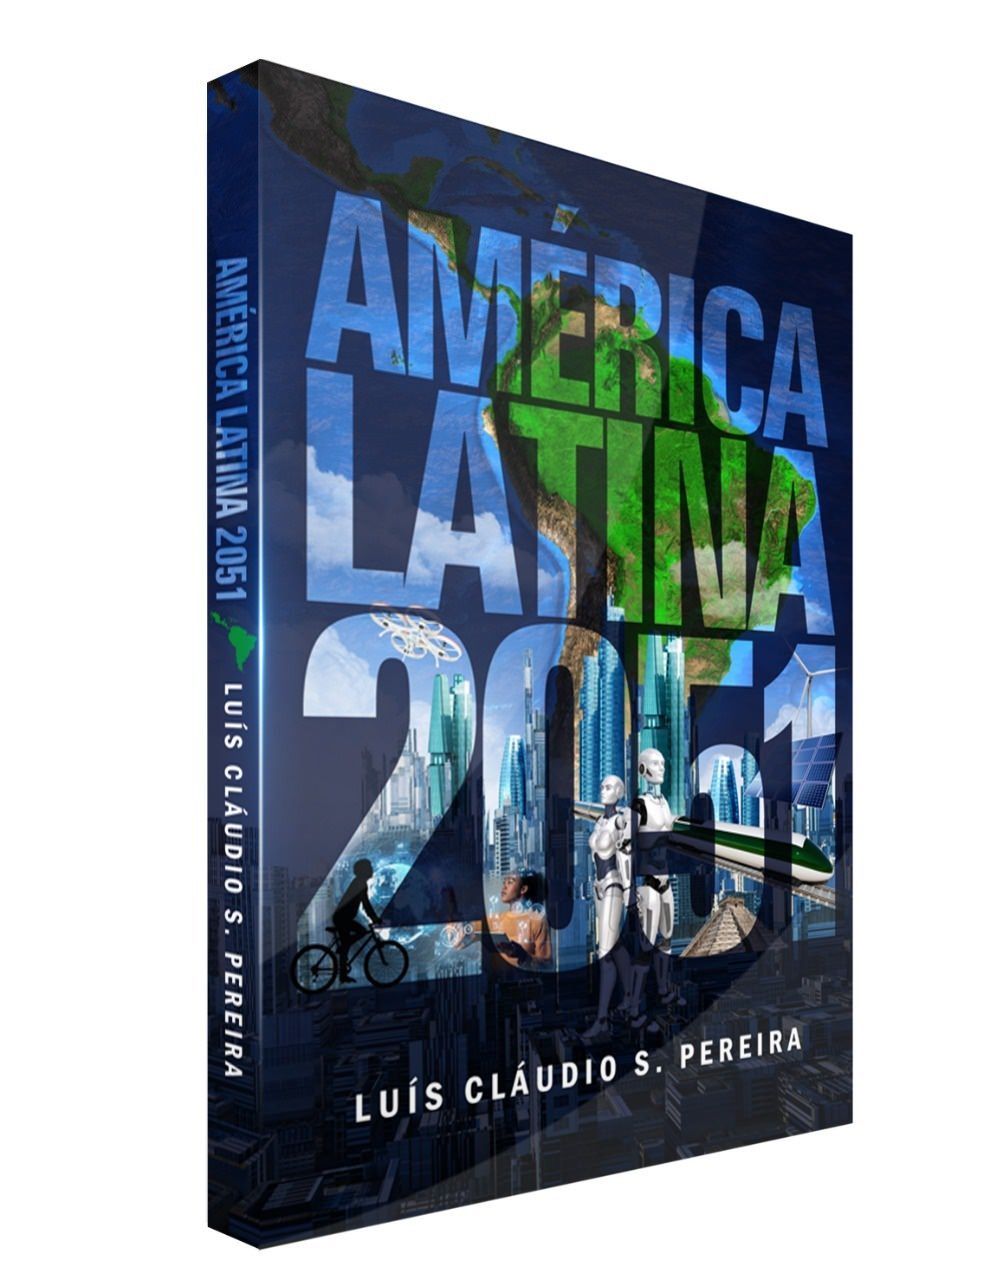 Libro "América Latina 2051" de Luís Cláudio S. Pera, cubierta. Divulgación.